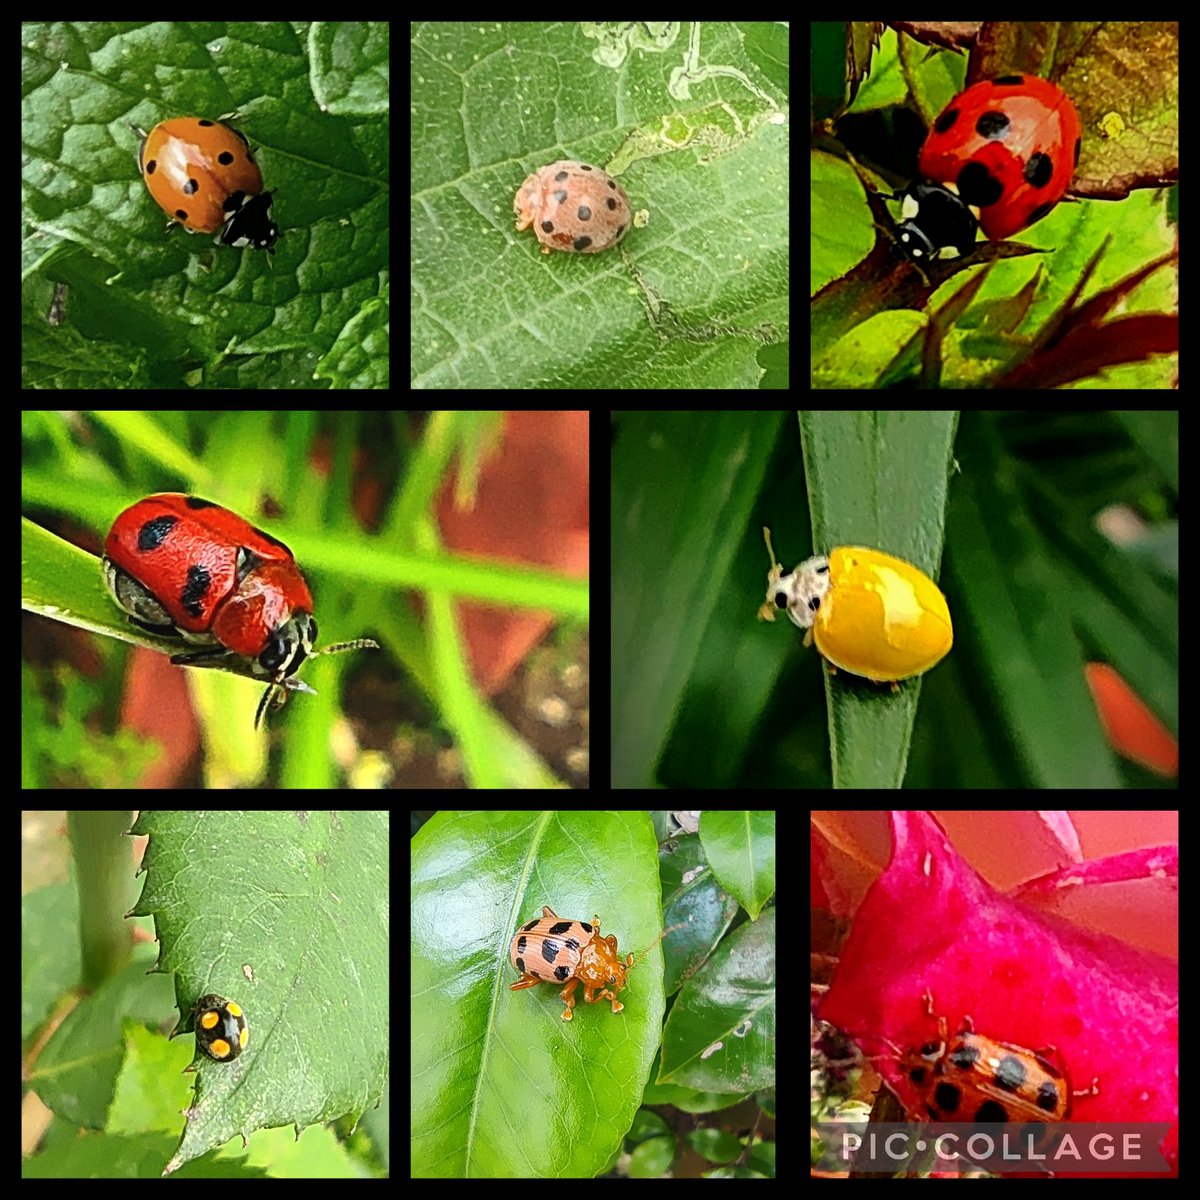 Lady bugs/ lady beetles from 2022... @IndiAves @MistyNelson67 @DavidMariposa1 #InsectThursday #insects #NaturePhotography #TwitterNatureCommunity #wayToWild #ThePhotoHour